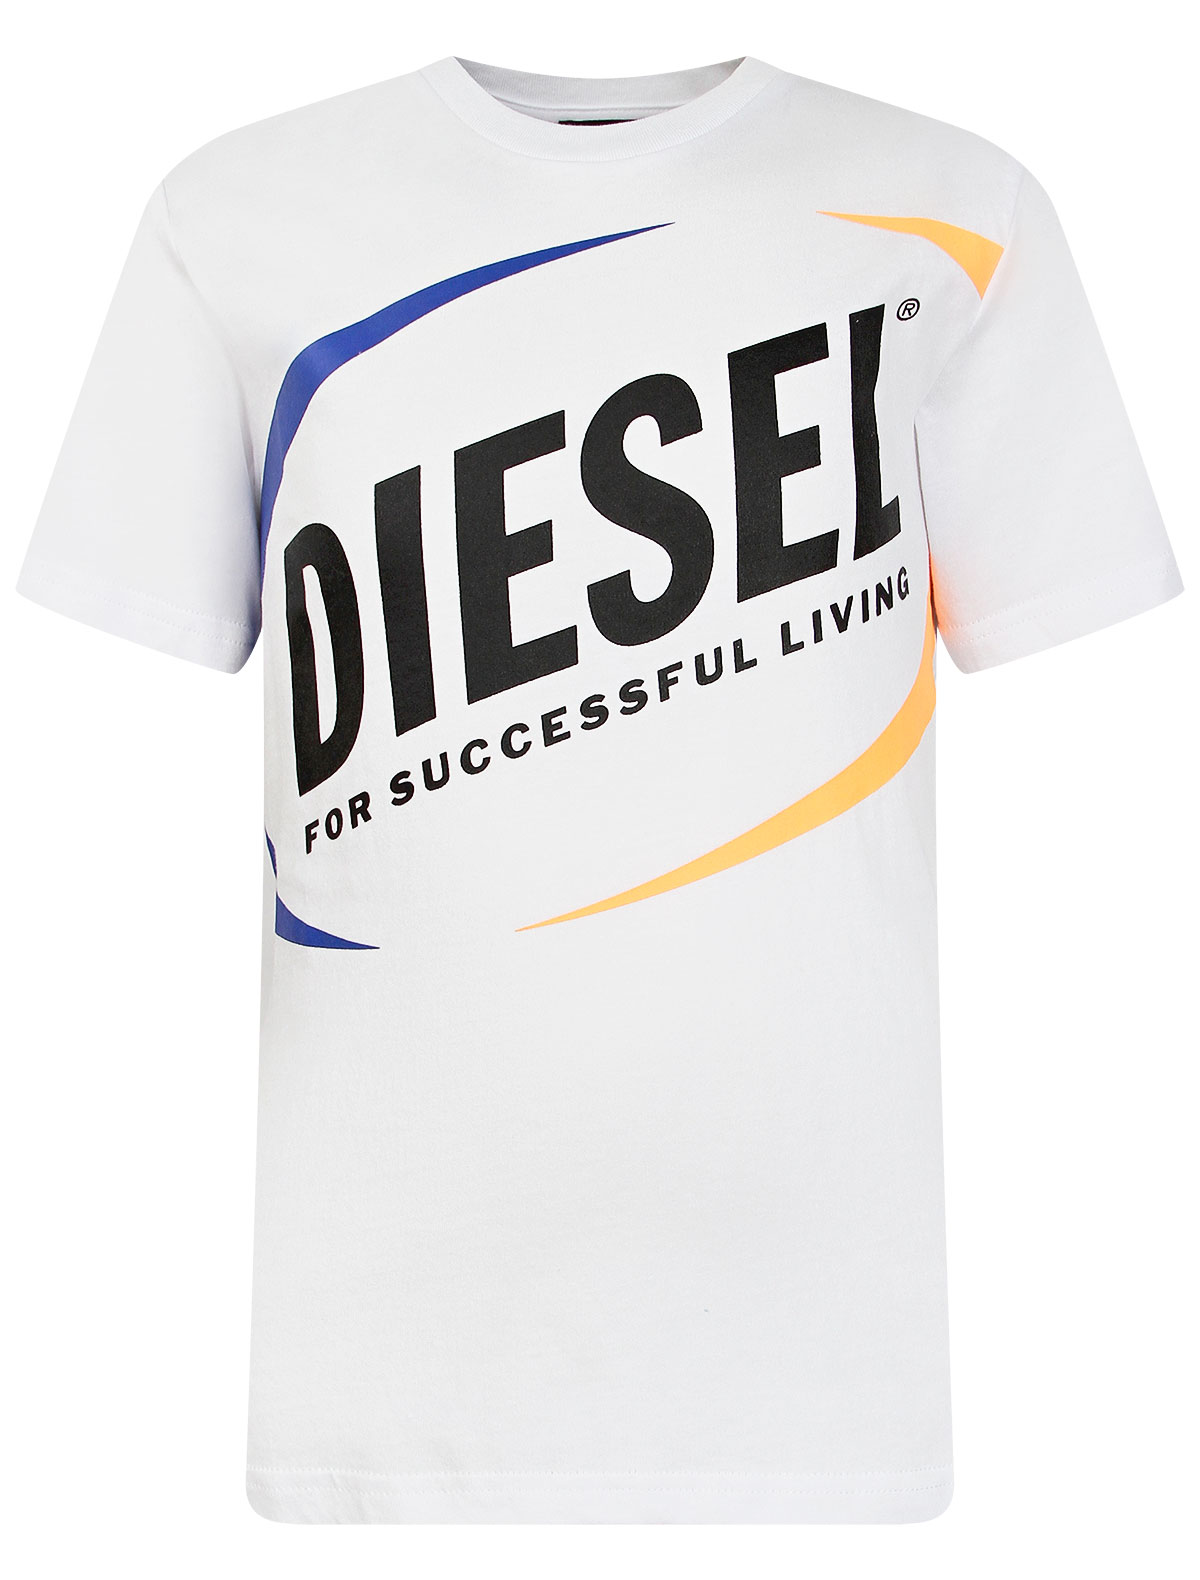 Футболка Diesel белого цвета